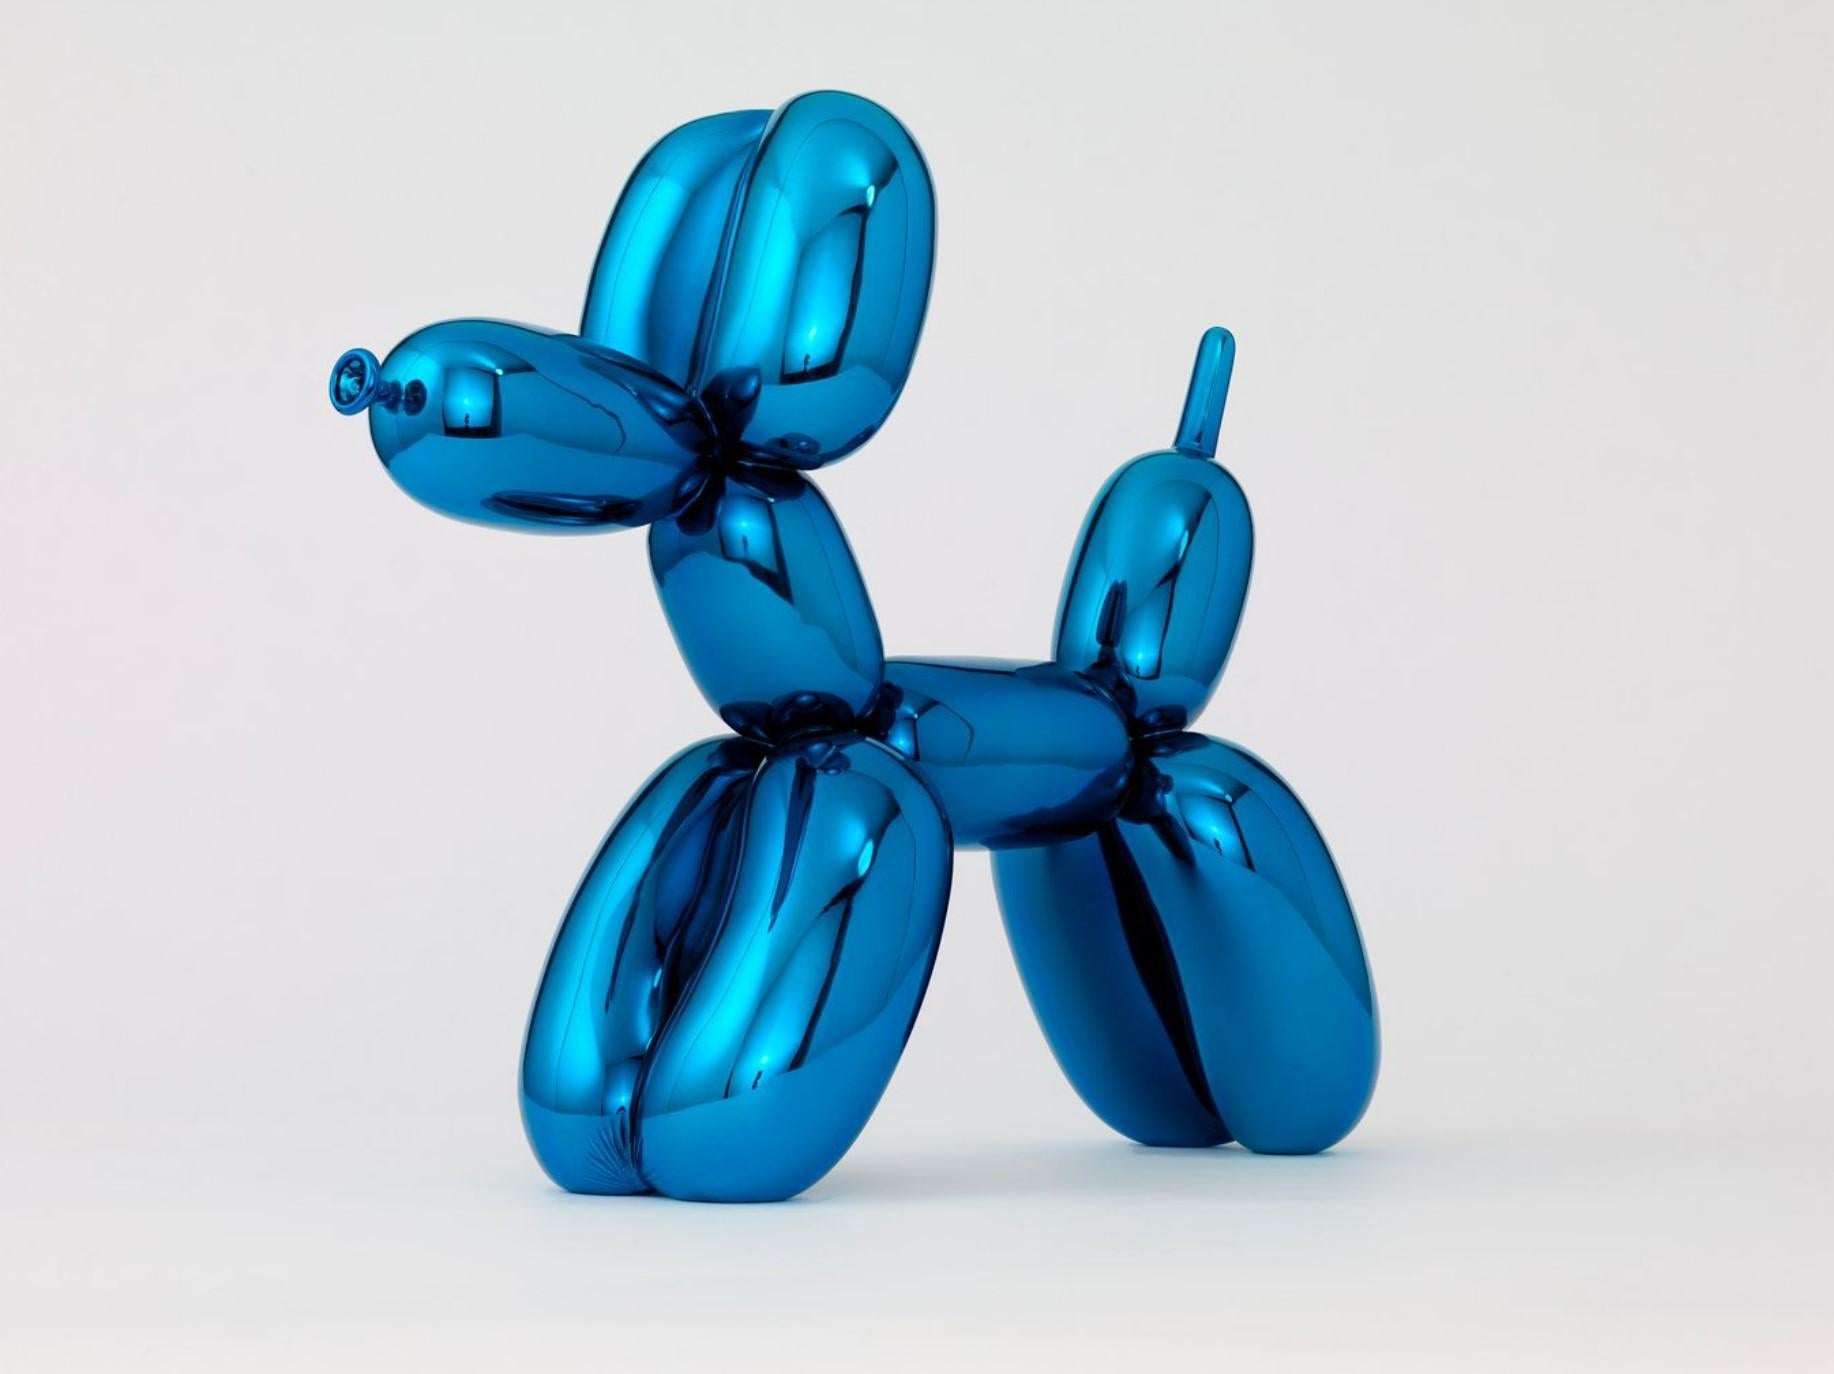 Le chien Ballon bleu - Sculpture de Jeff Koons